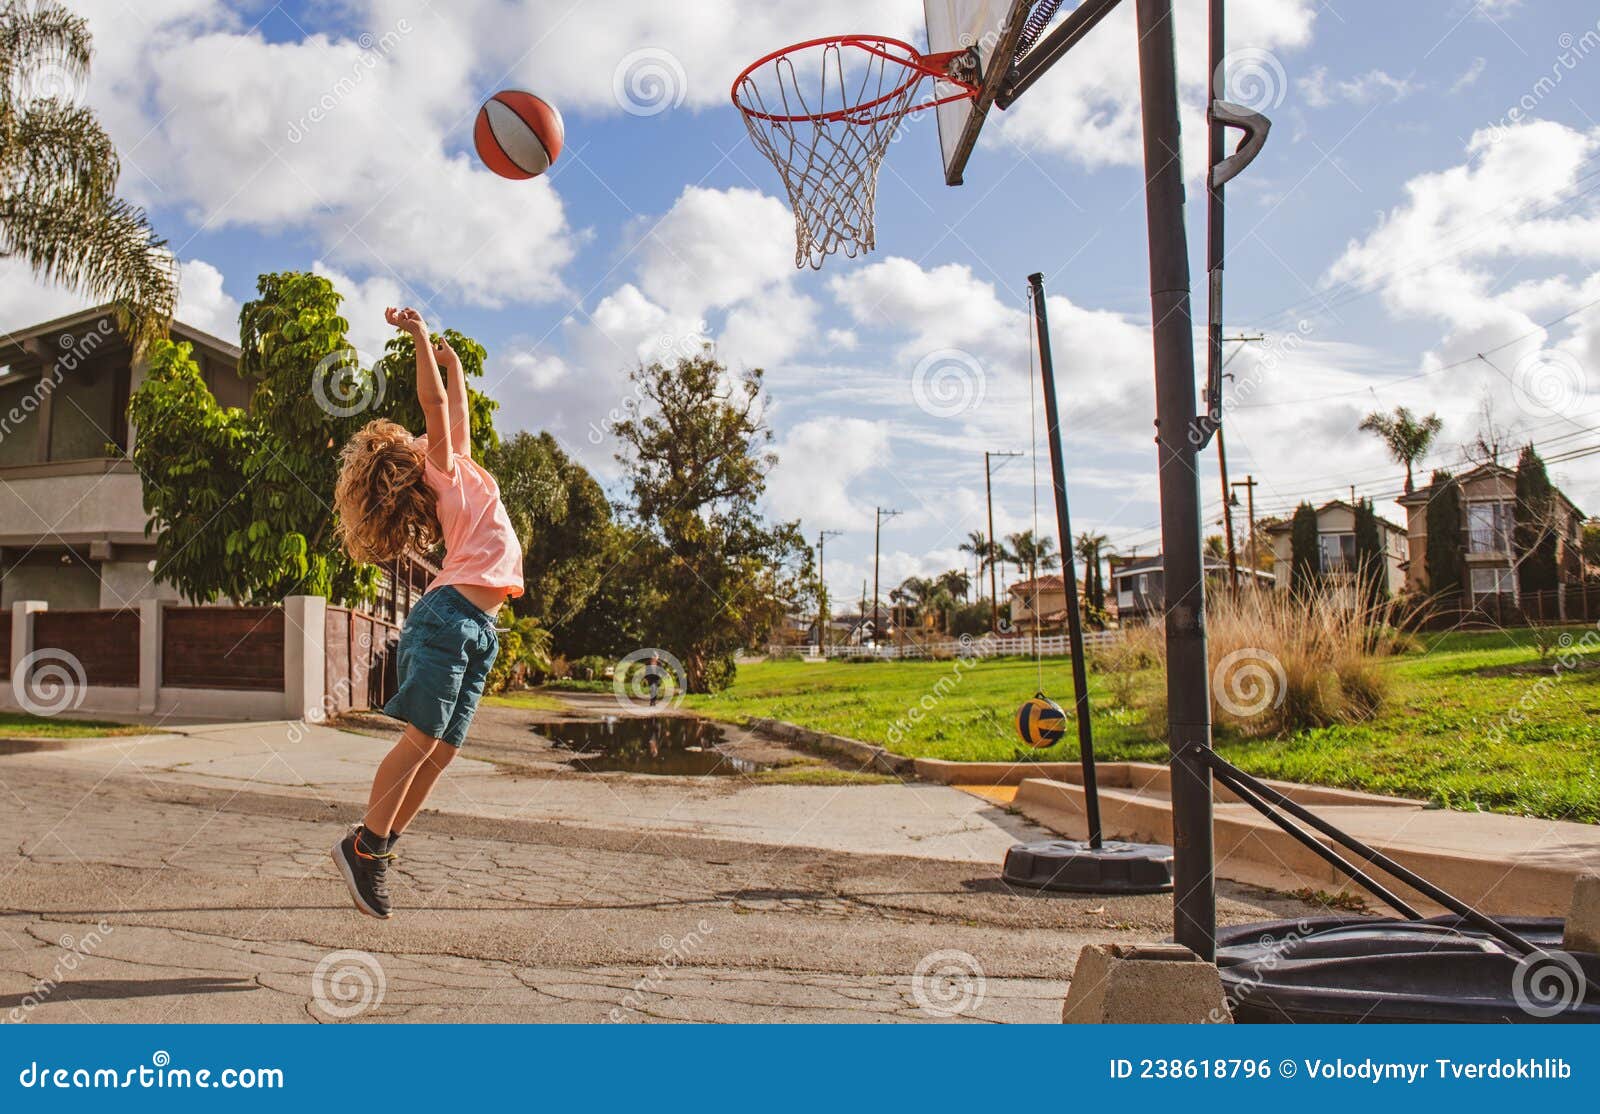 Bambini che giocano a basket fuori